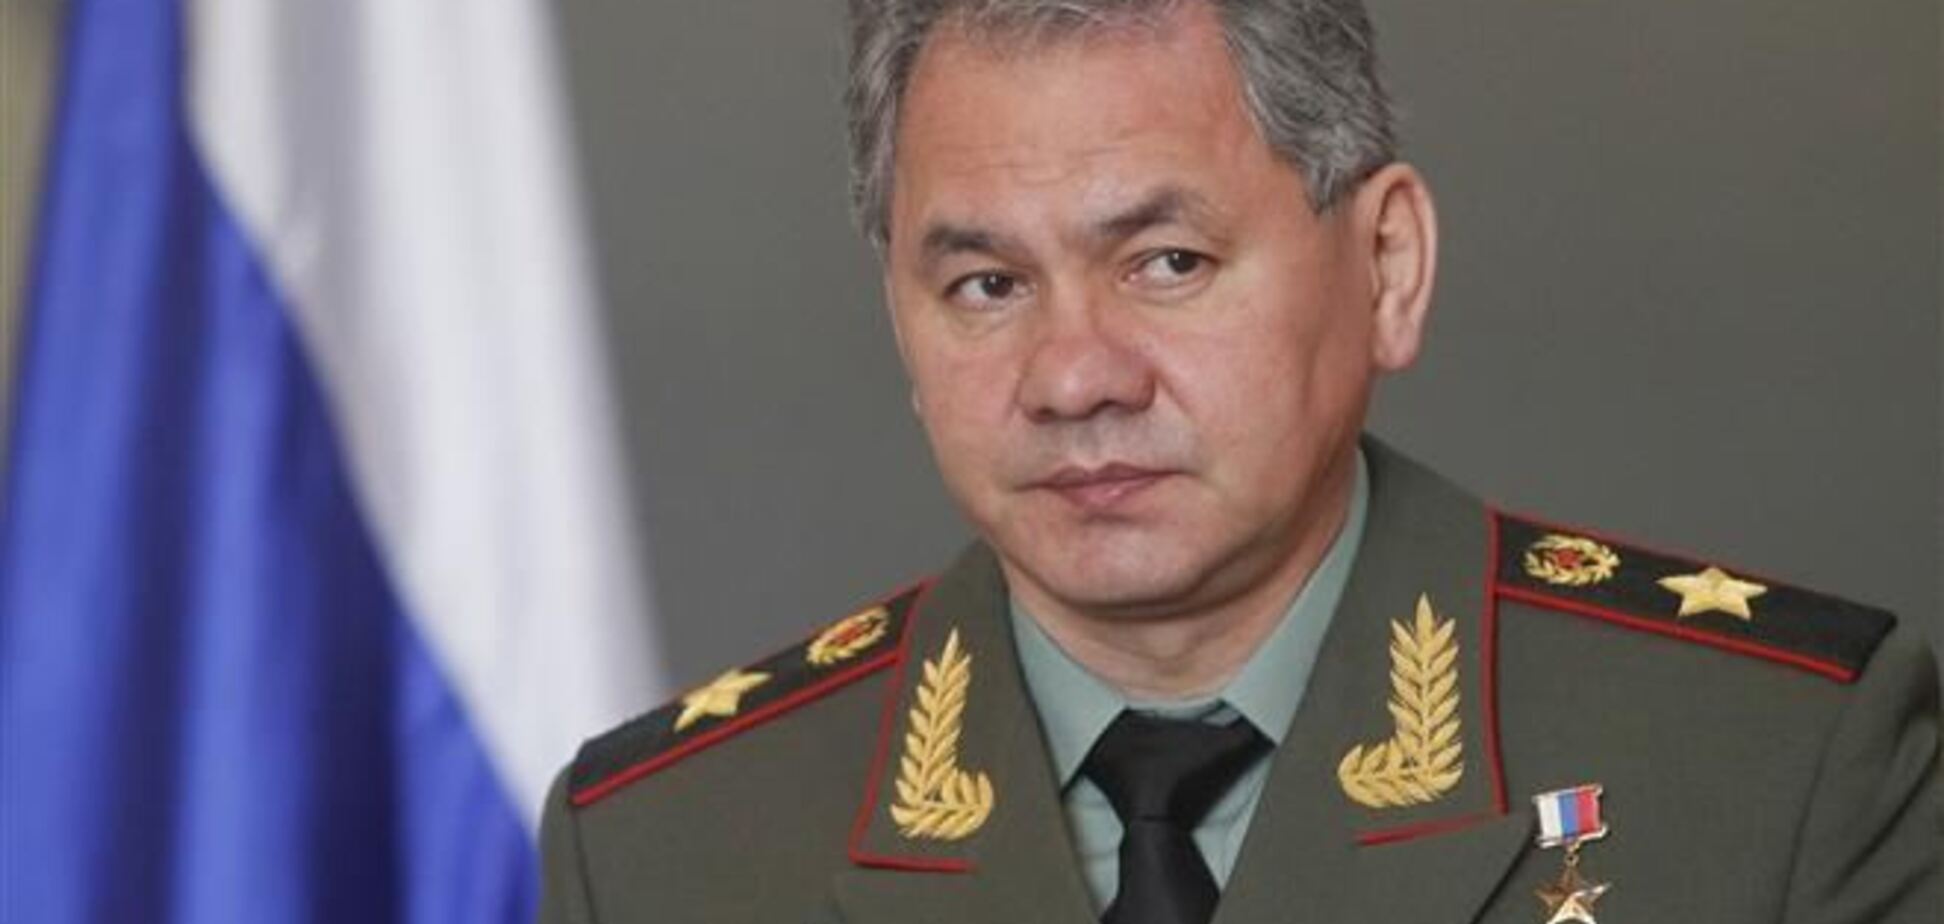 Ввести війська в Крим Росію змусили 'екстремісти' - Шойгу